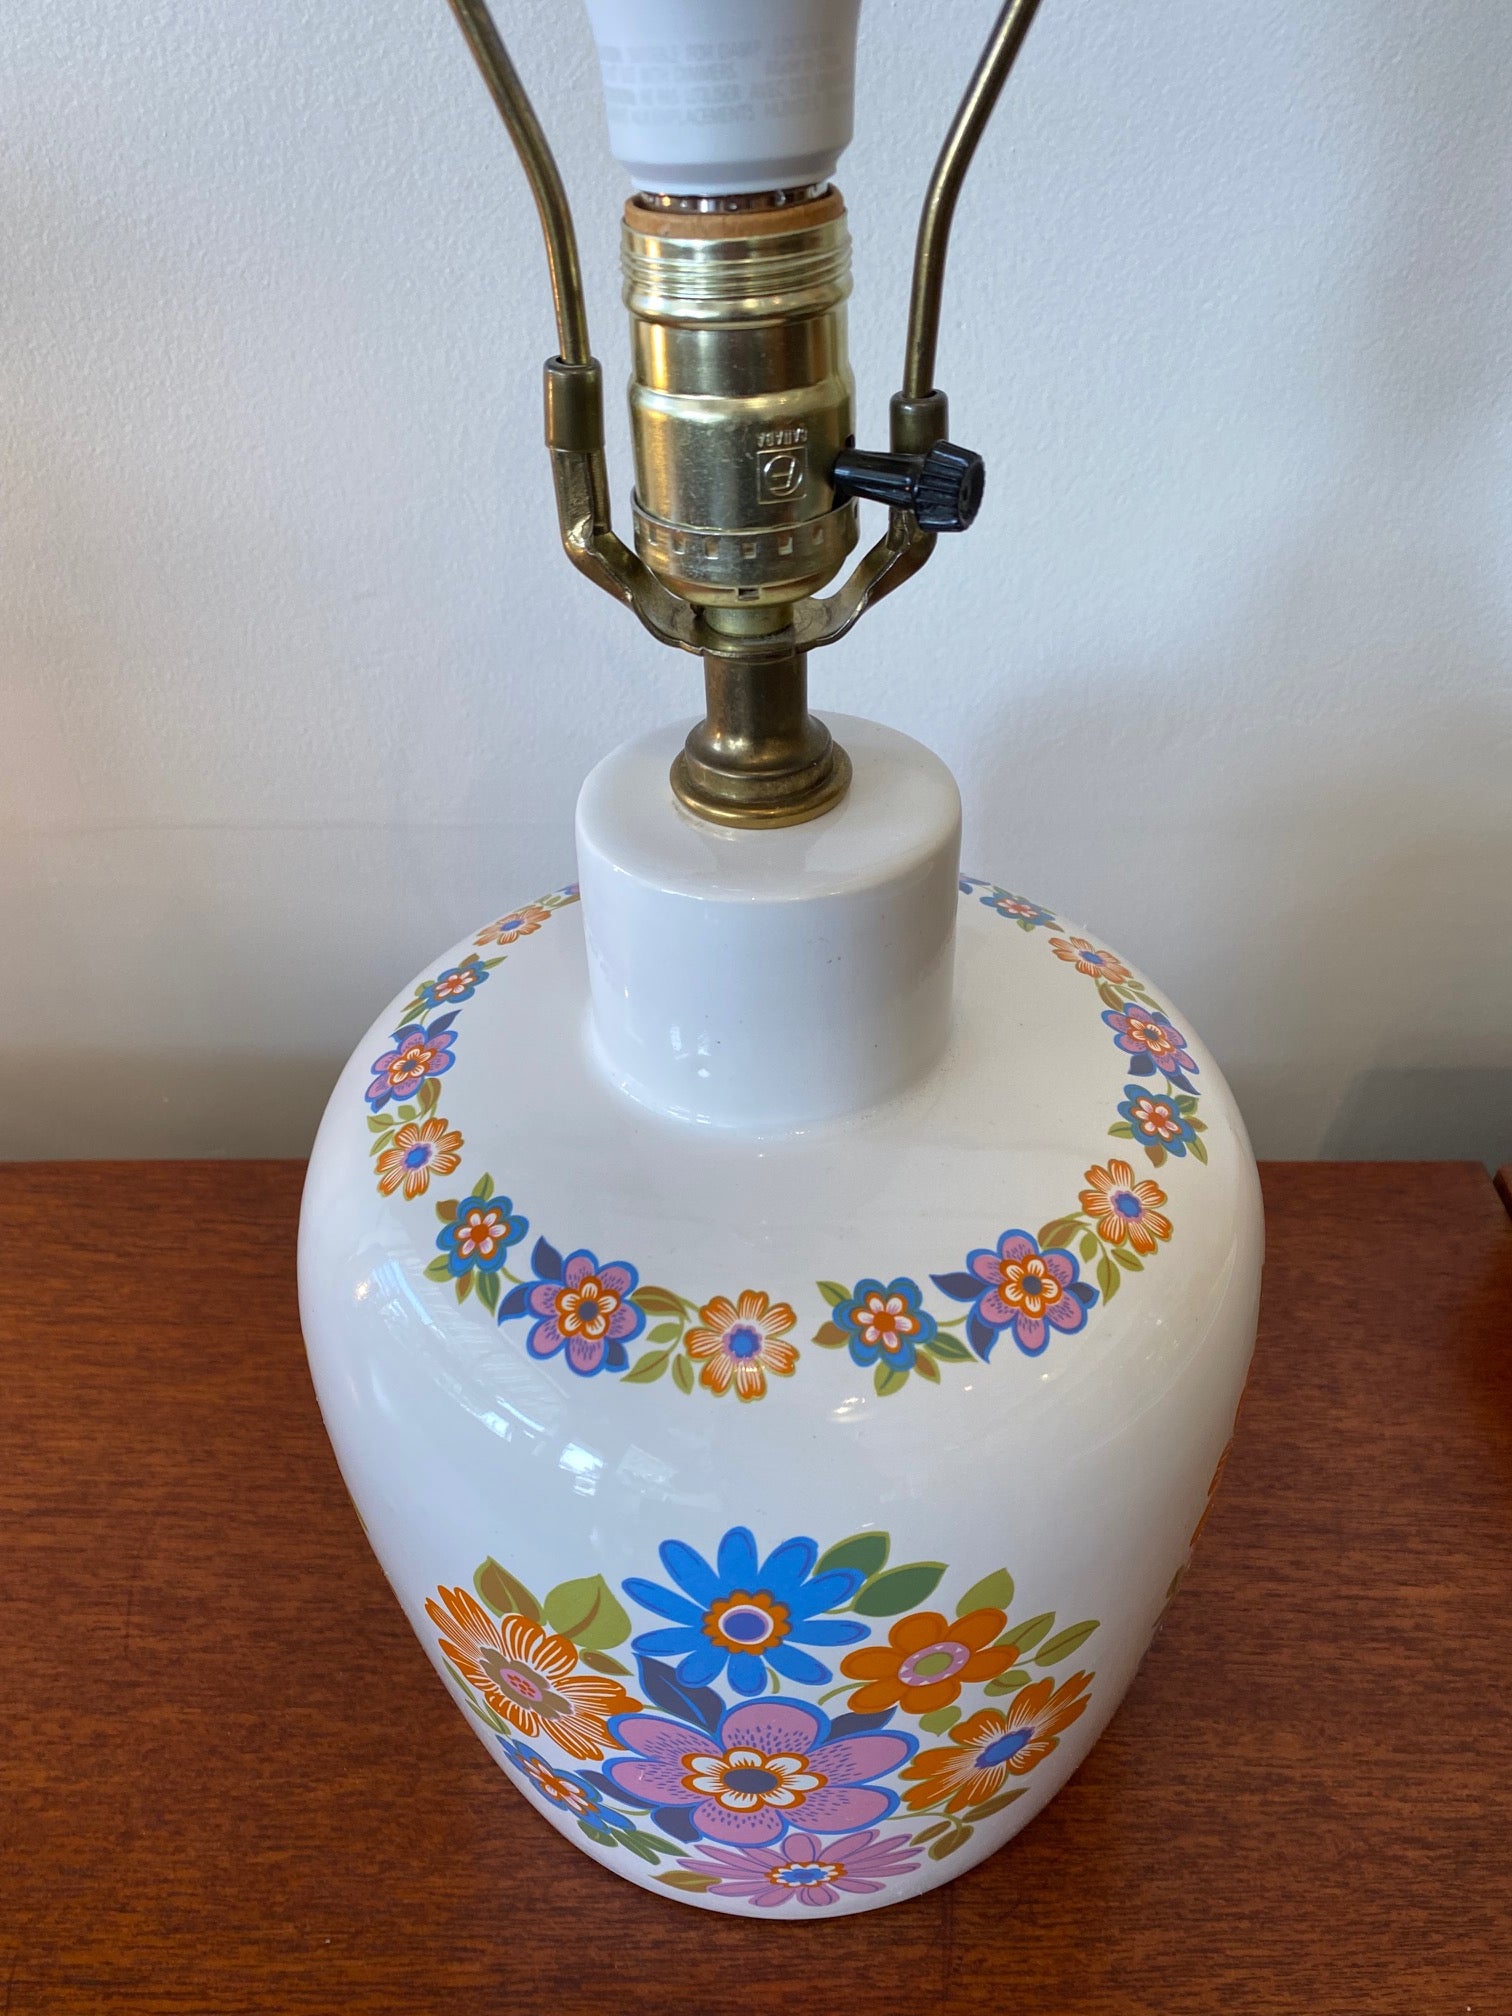 Vintage ceramic lamp with flowers- Cook Street Vintage